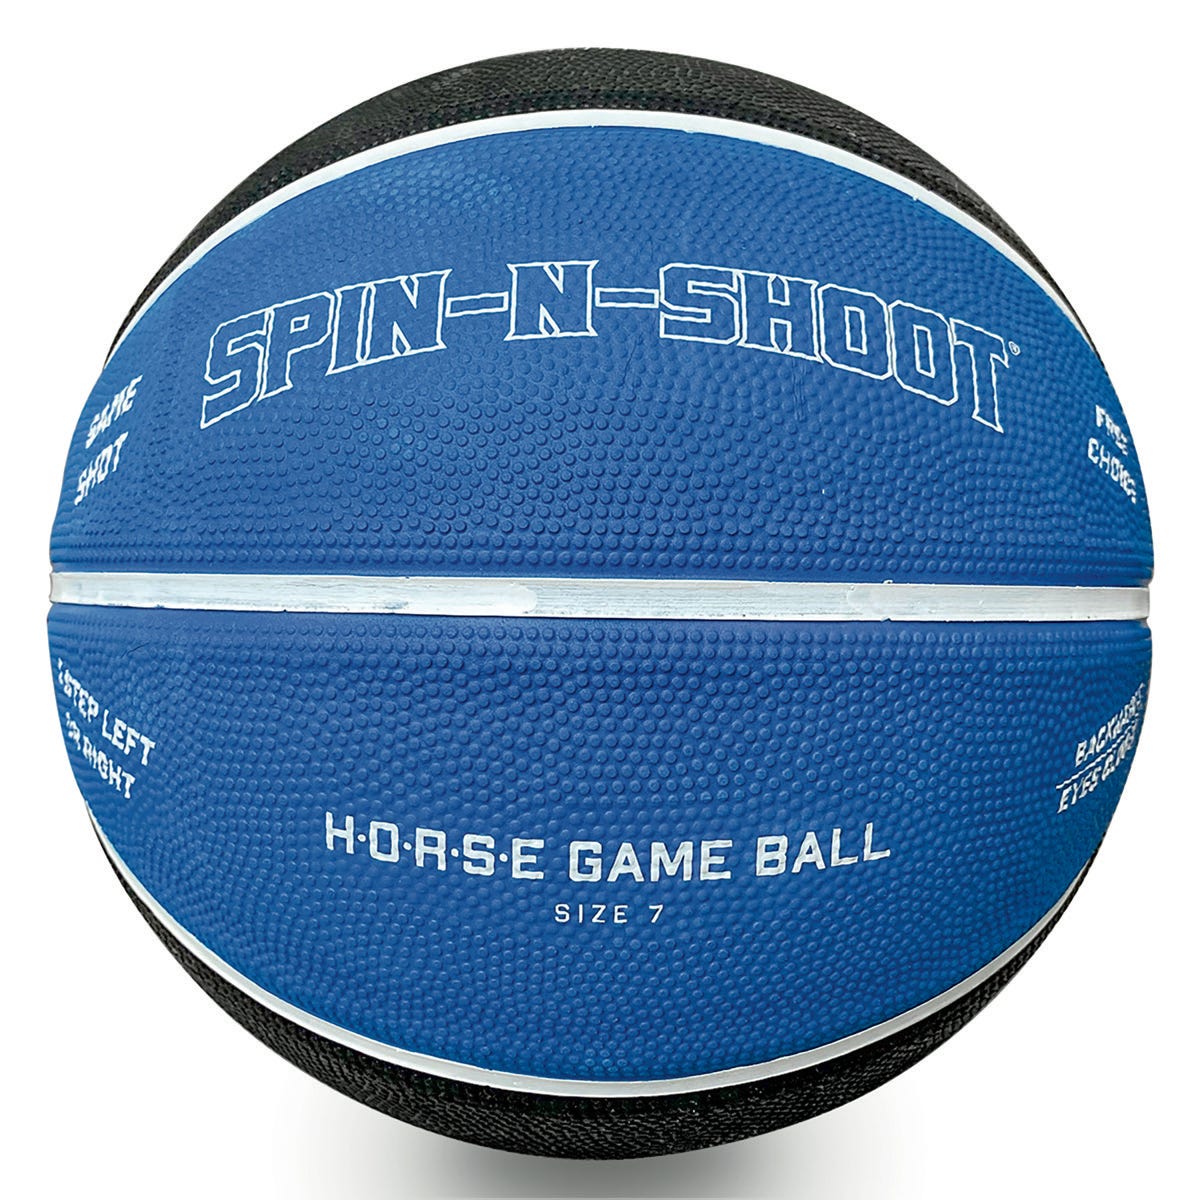 Spin-N-Shoot H.O.R.S.E Ball